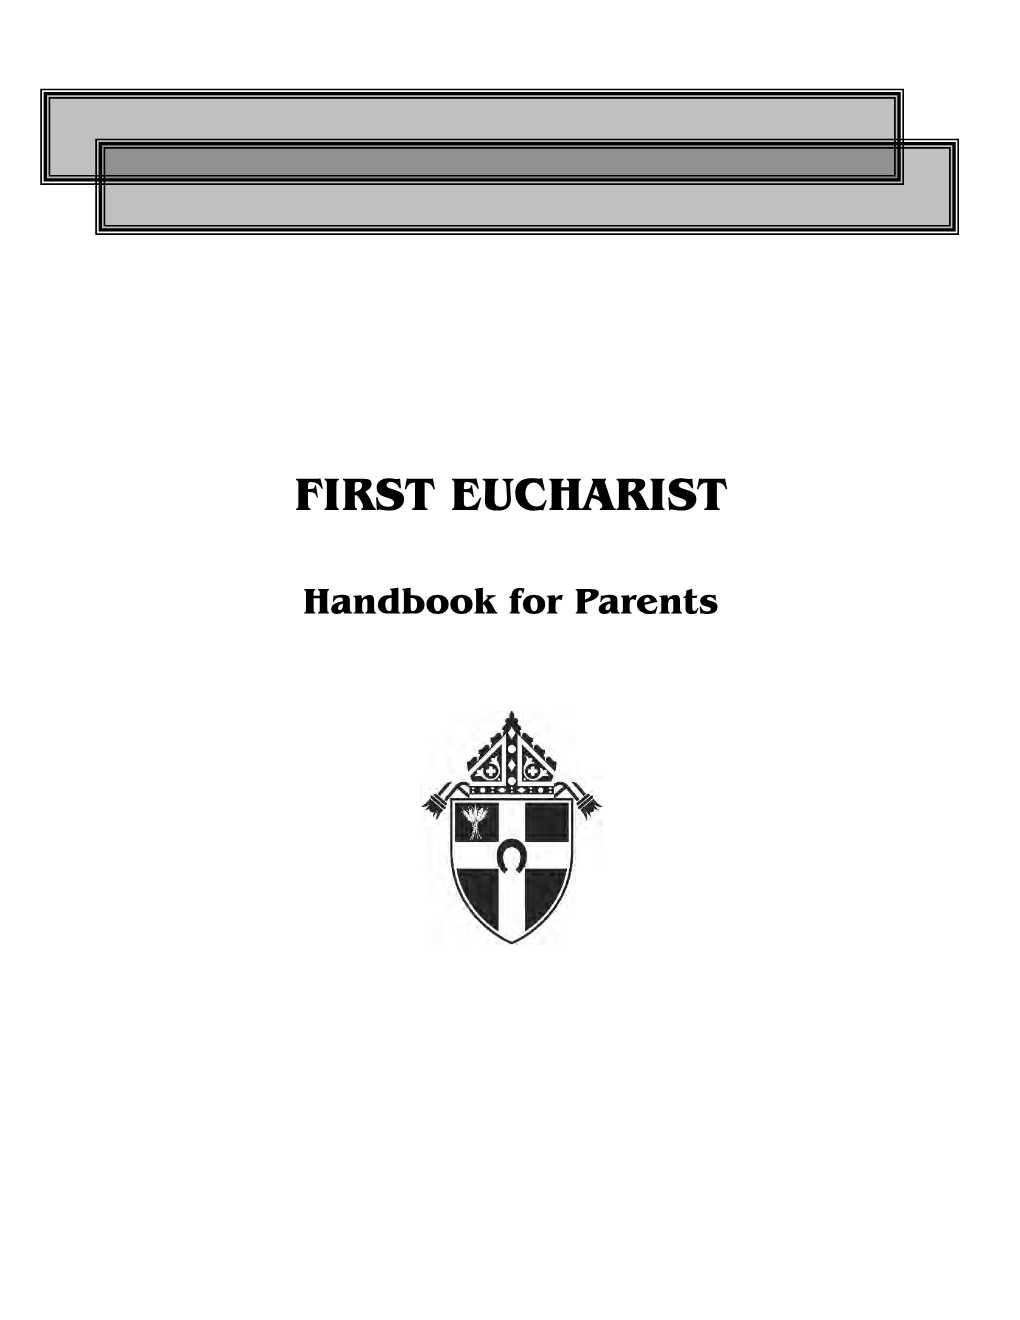 First Eucharist